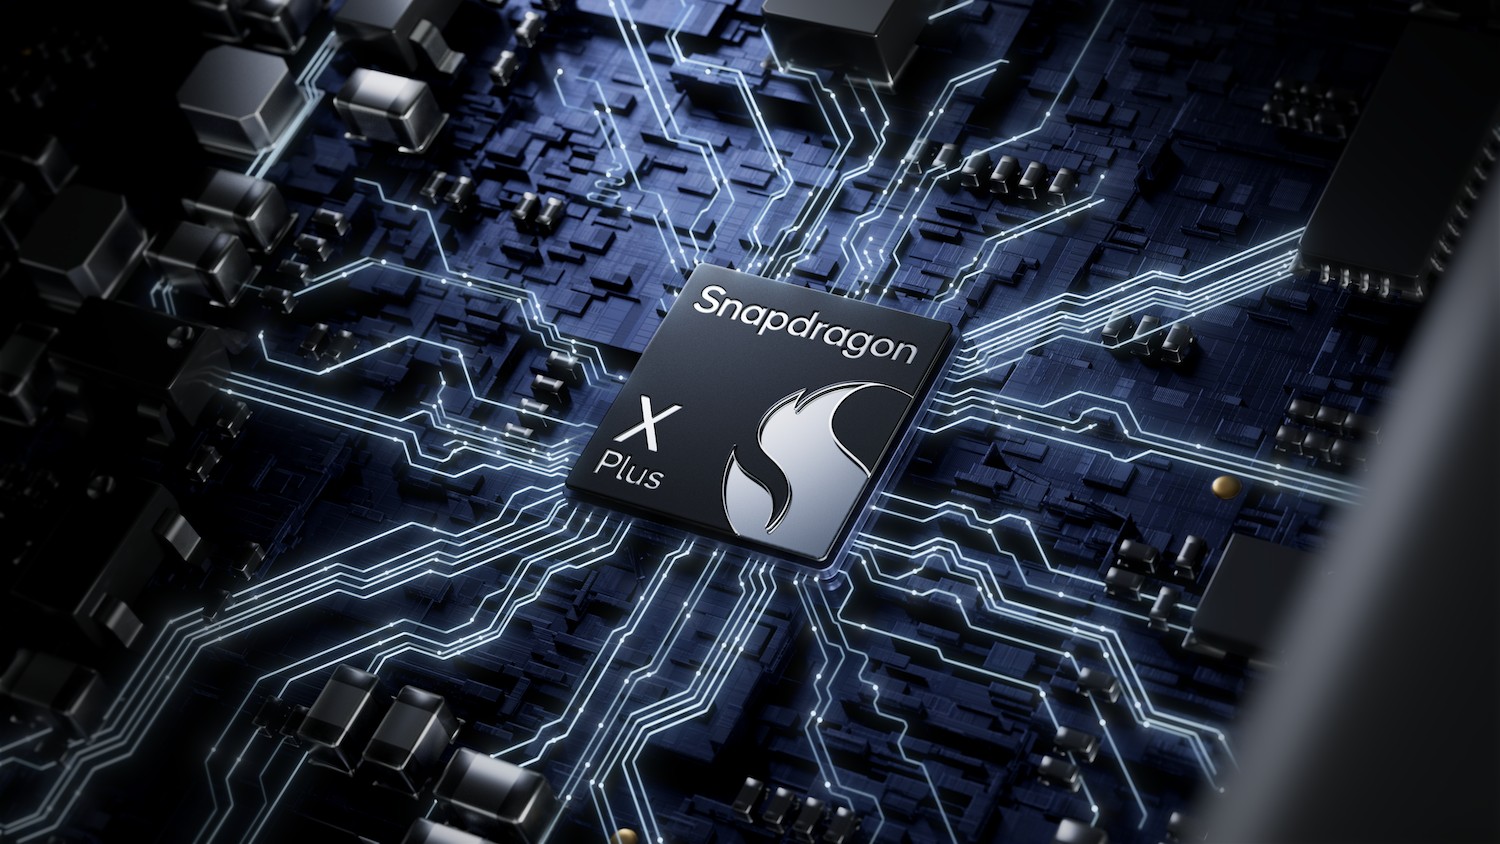 'ควอลคอมม์' ส่ง ‘snapdragon x plus’ พลิกโฉมอุตสาหกรรมพีซี